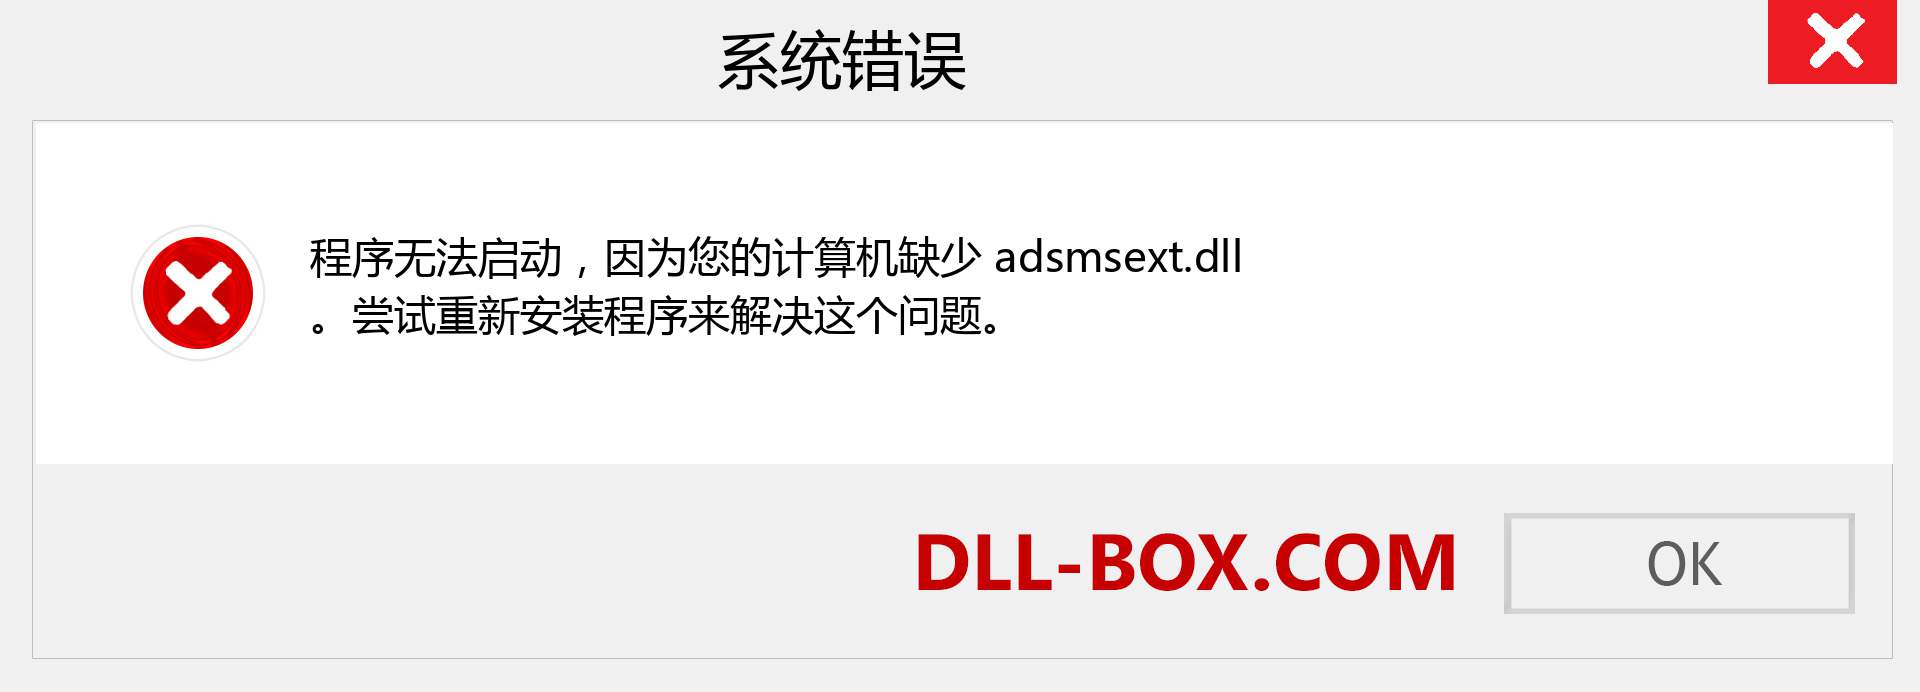 adsmsext.dll 文件丢失？。 适用于 Windows 7、8、10 的下载 - 修复 Windows、照片、图像上的 adsmsext dll 丢失错误